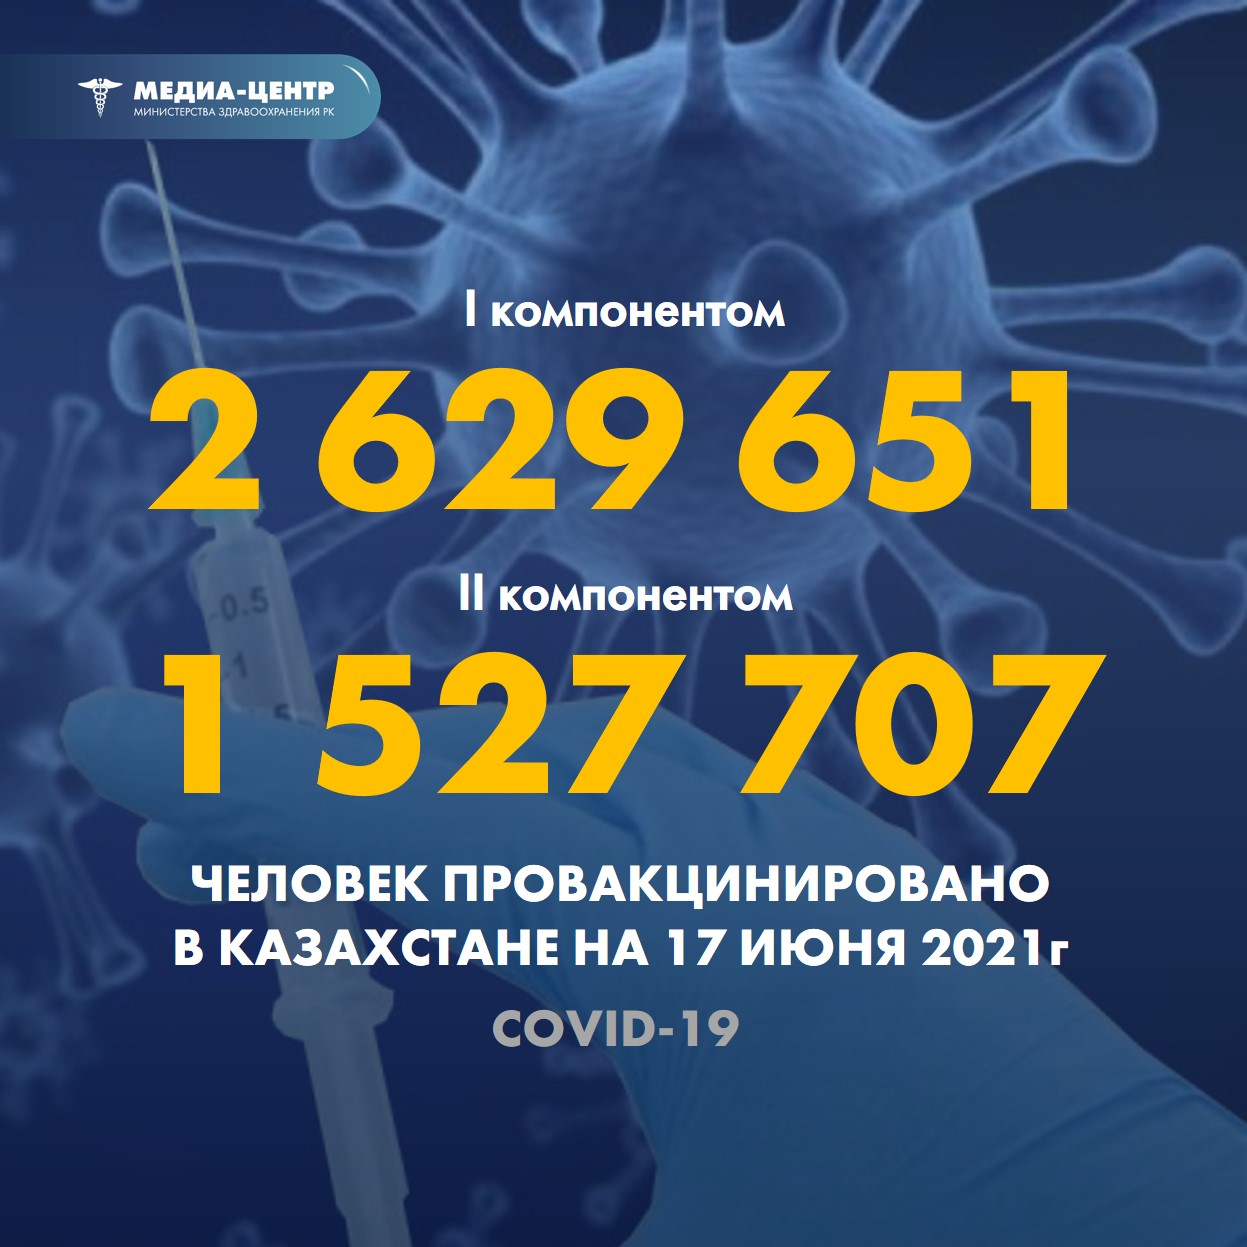 Информация о проведении вакцинации населения против КВИ на 17.06.2021 г. в разрезе регионов